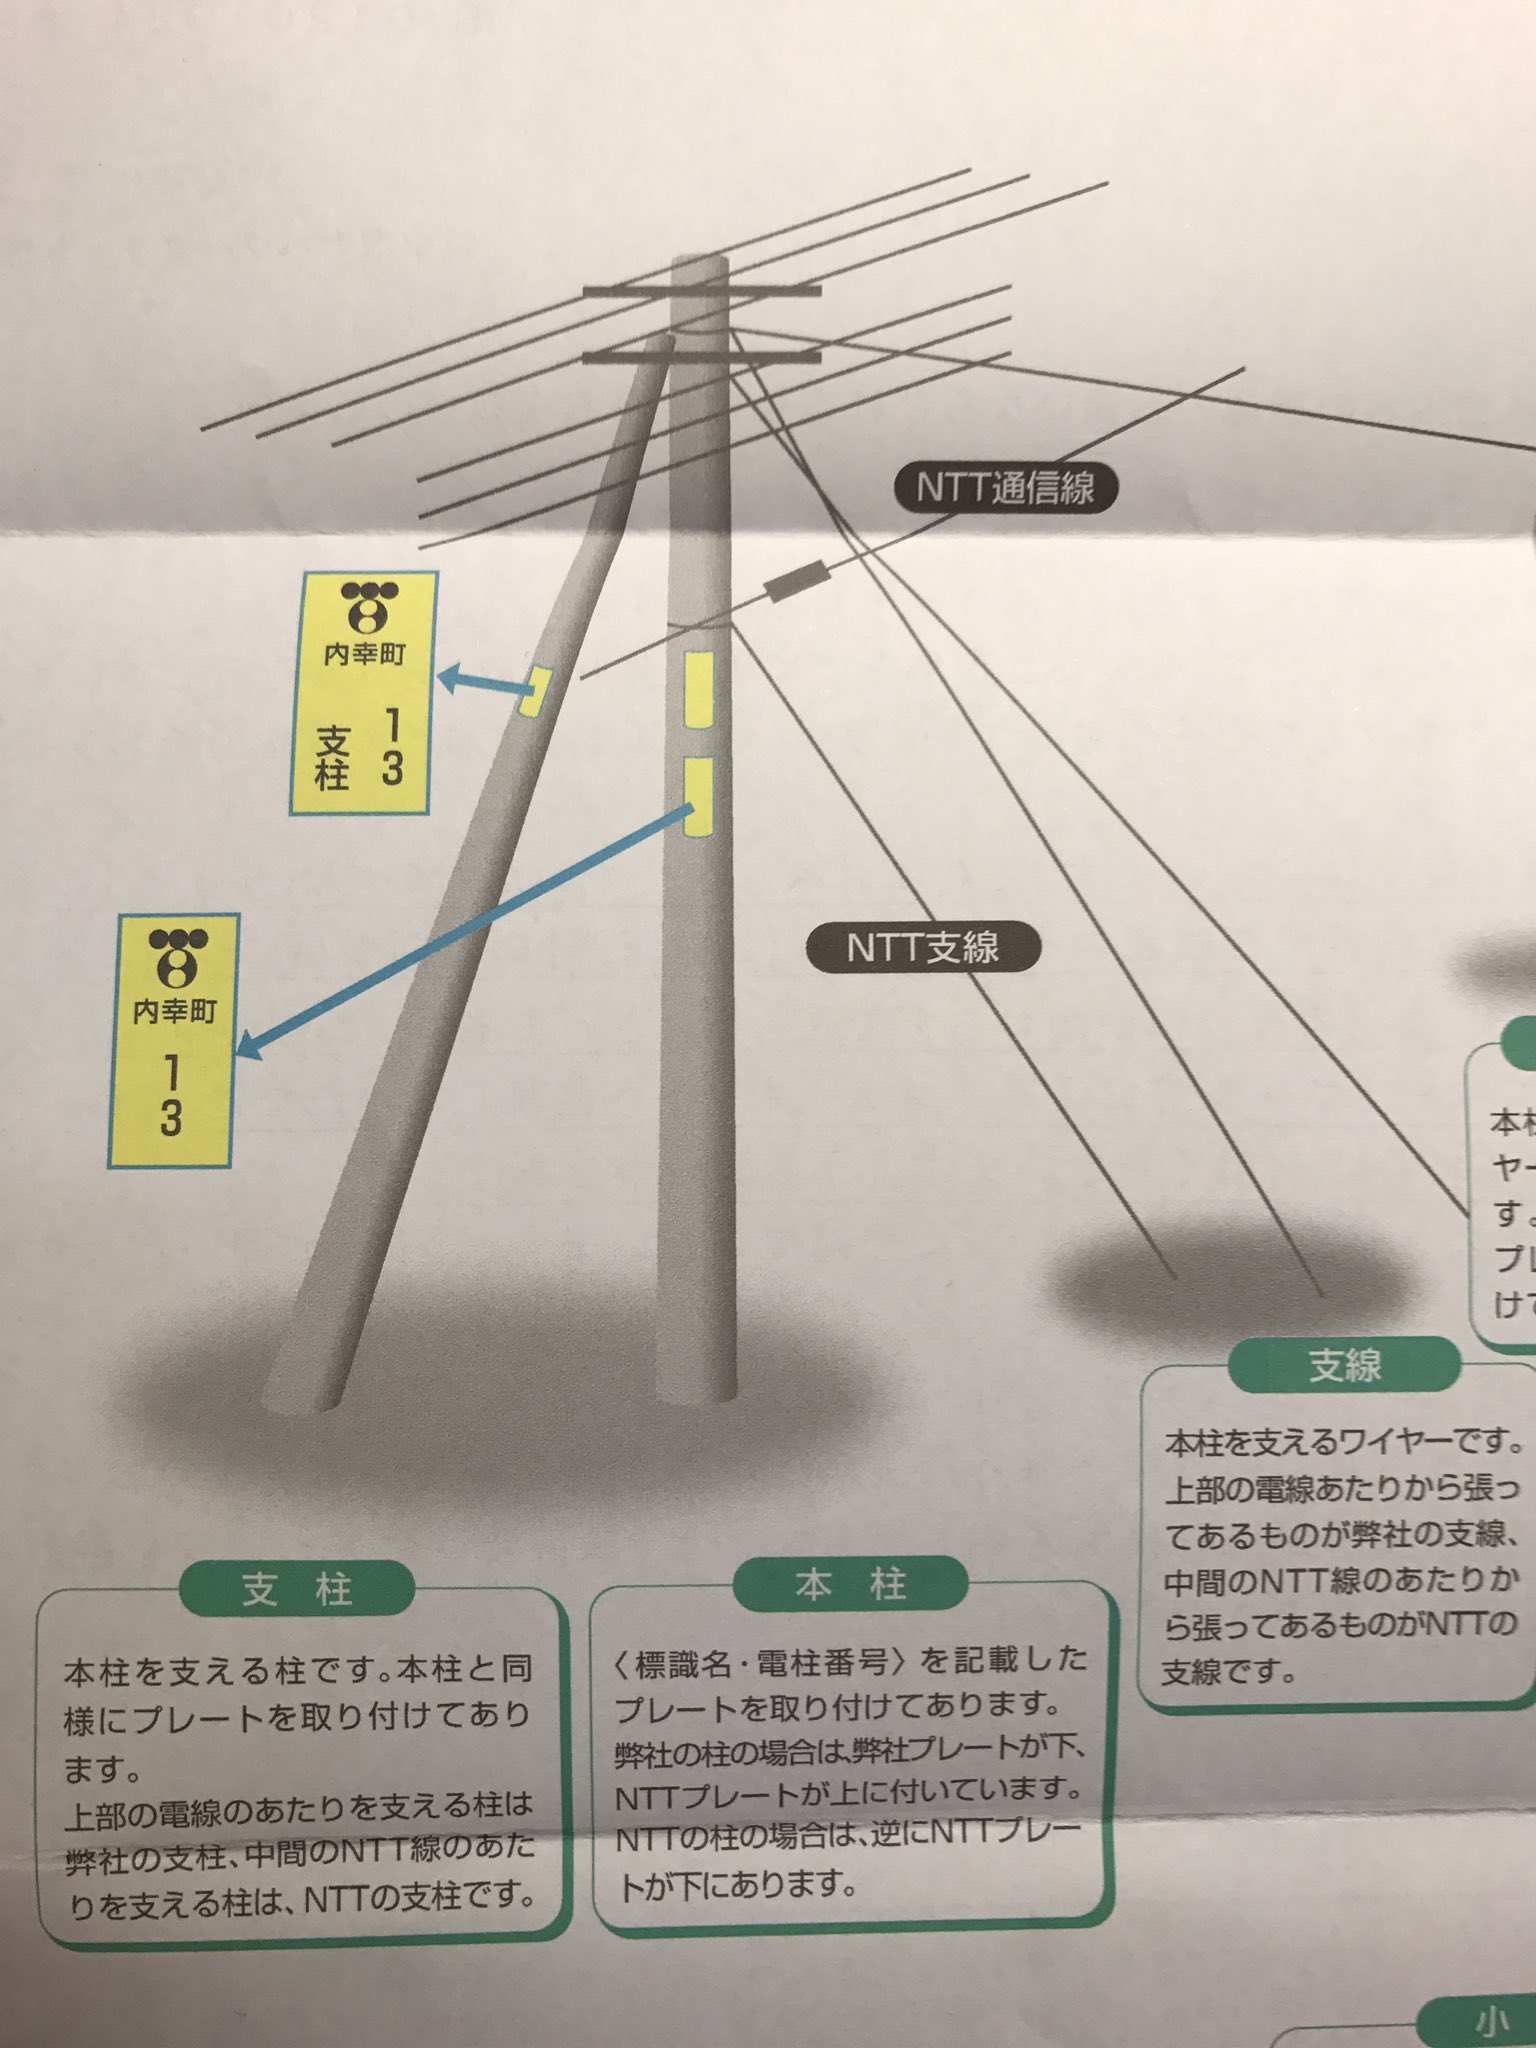 谷謙二 Tani Kenji A Twitter 東京電力からの手紙に 電柱の説明があった 東京電力のプレートが下 Nttのプレートが上の場合は 東京電力の電柱 逆ならnttの電柱だそうだ